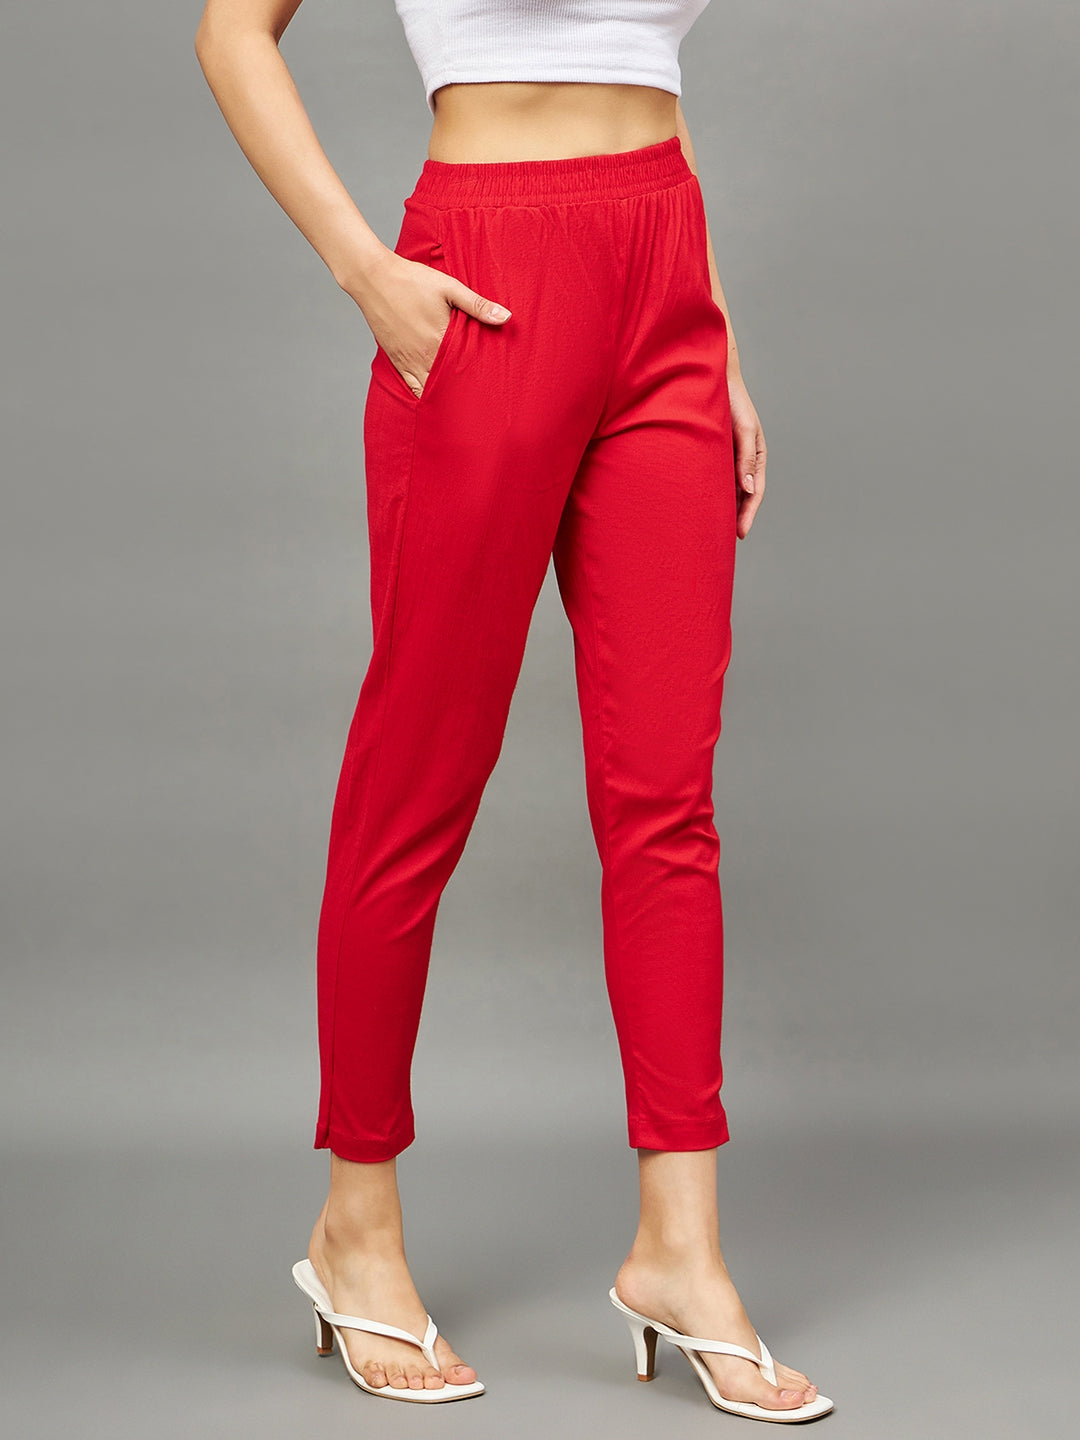 Women's Red Pants | Nordstrom Rack